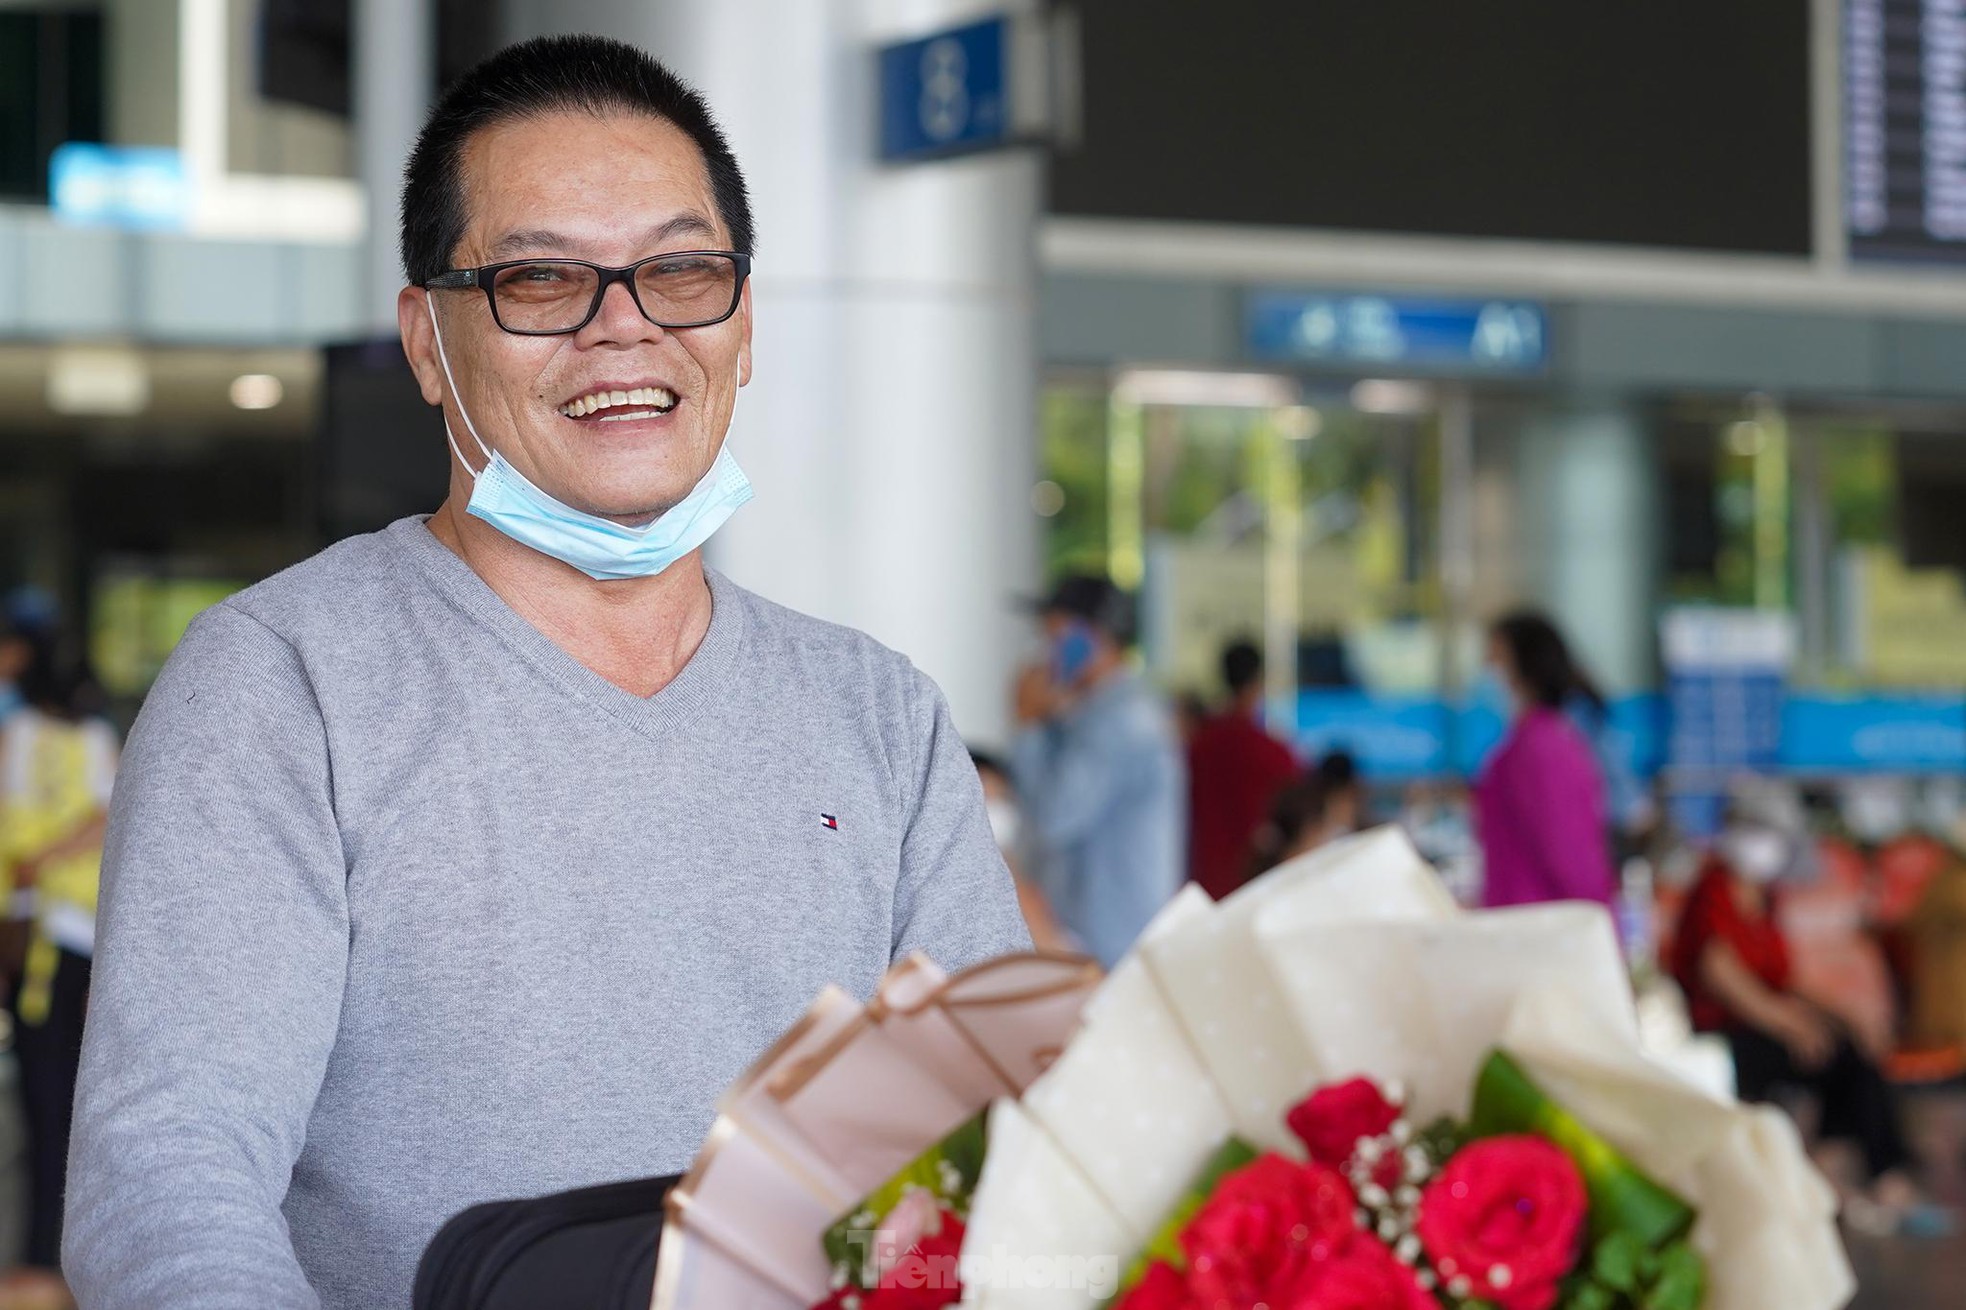 Vỡ òa cảm xúc tại sân bay Tân Sơn Nhất trong ngày đầu mở lại đường bay quốc tế - Ảnh 4.